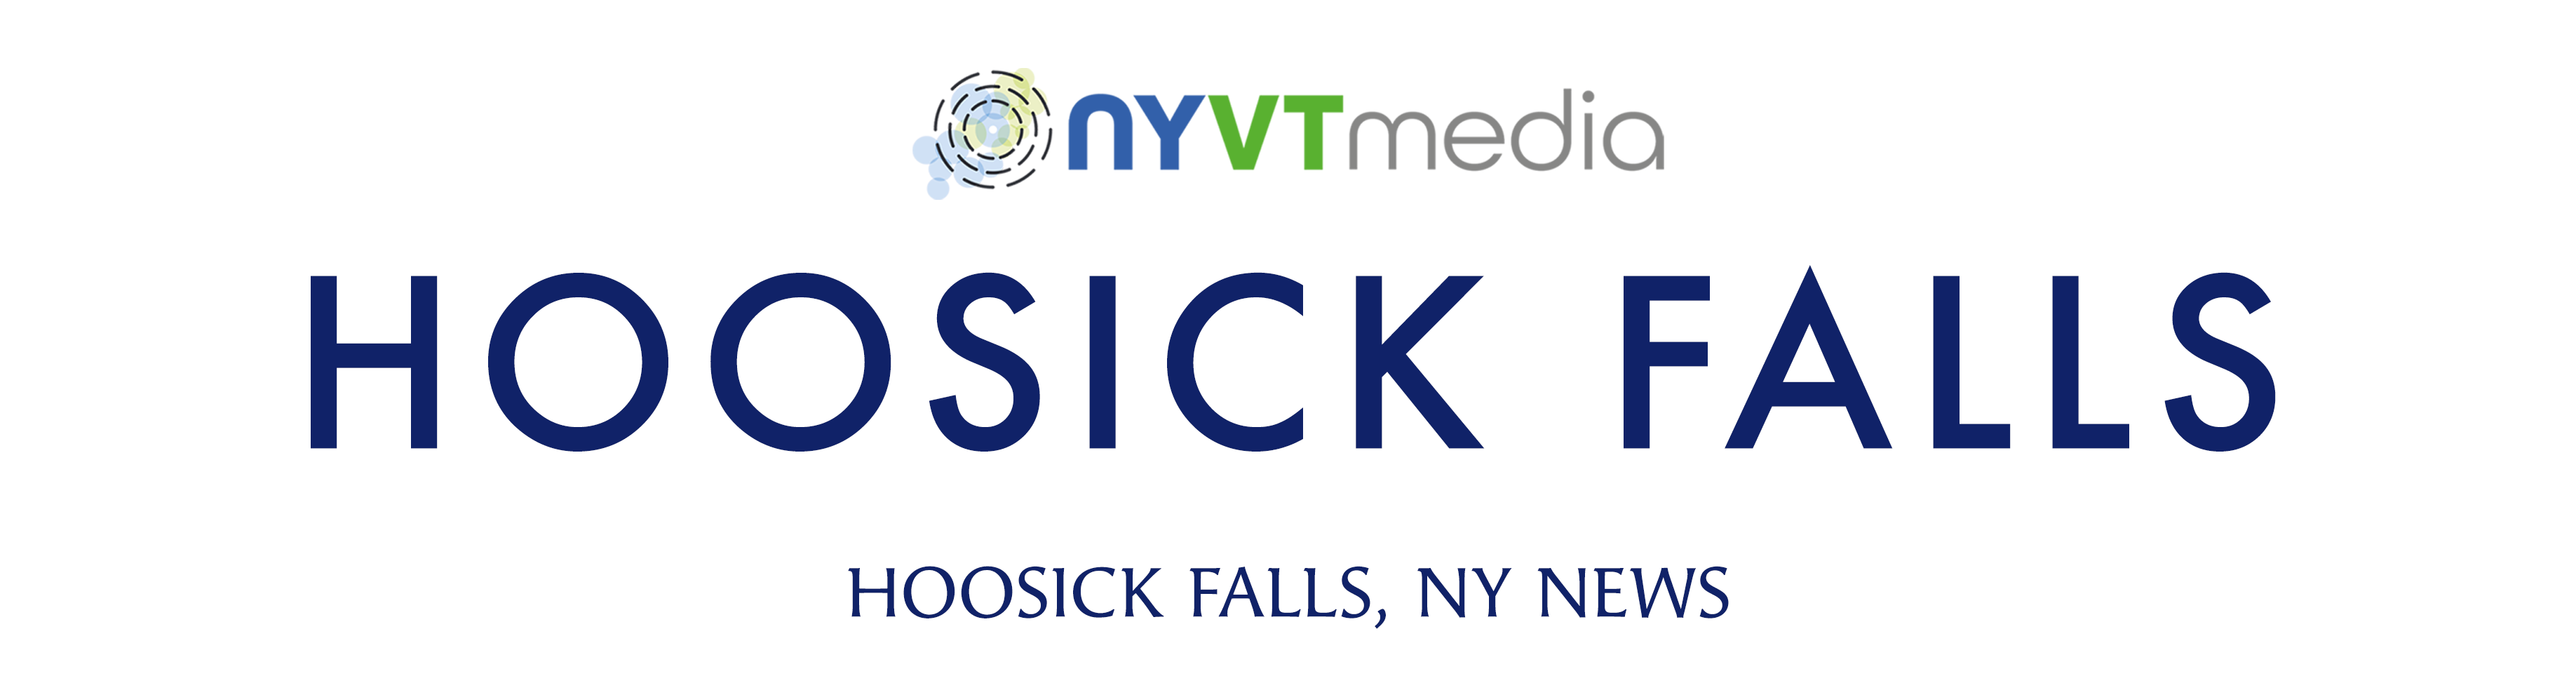 Hoosick Falls New York News NYVT Media